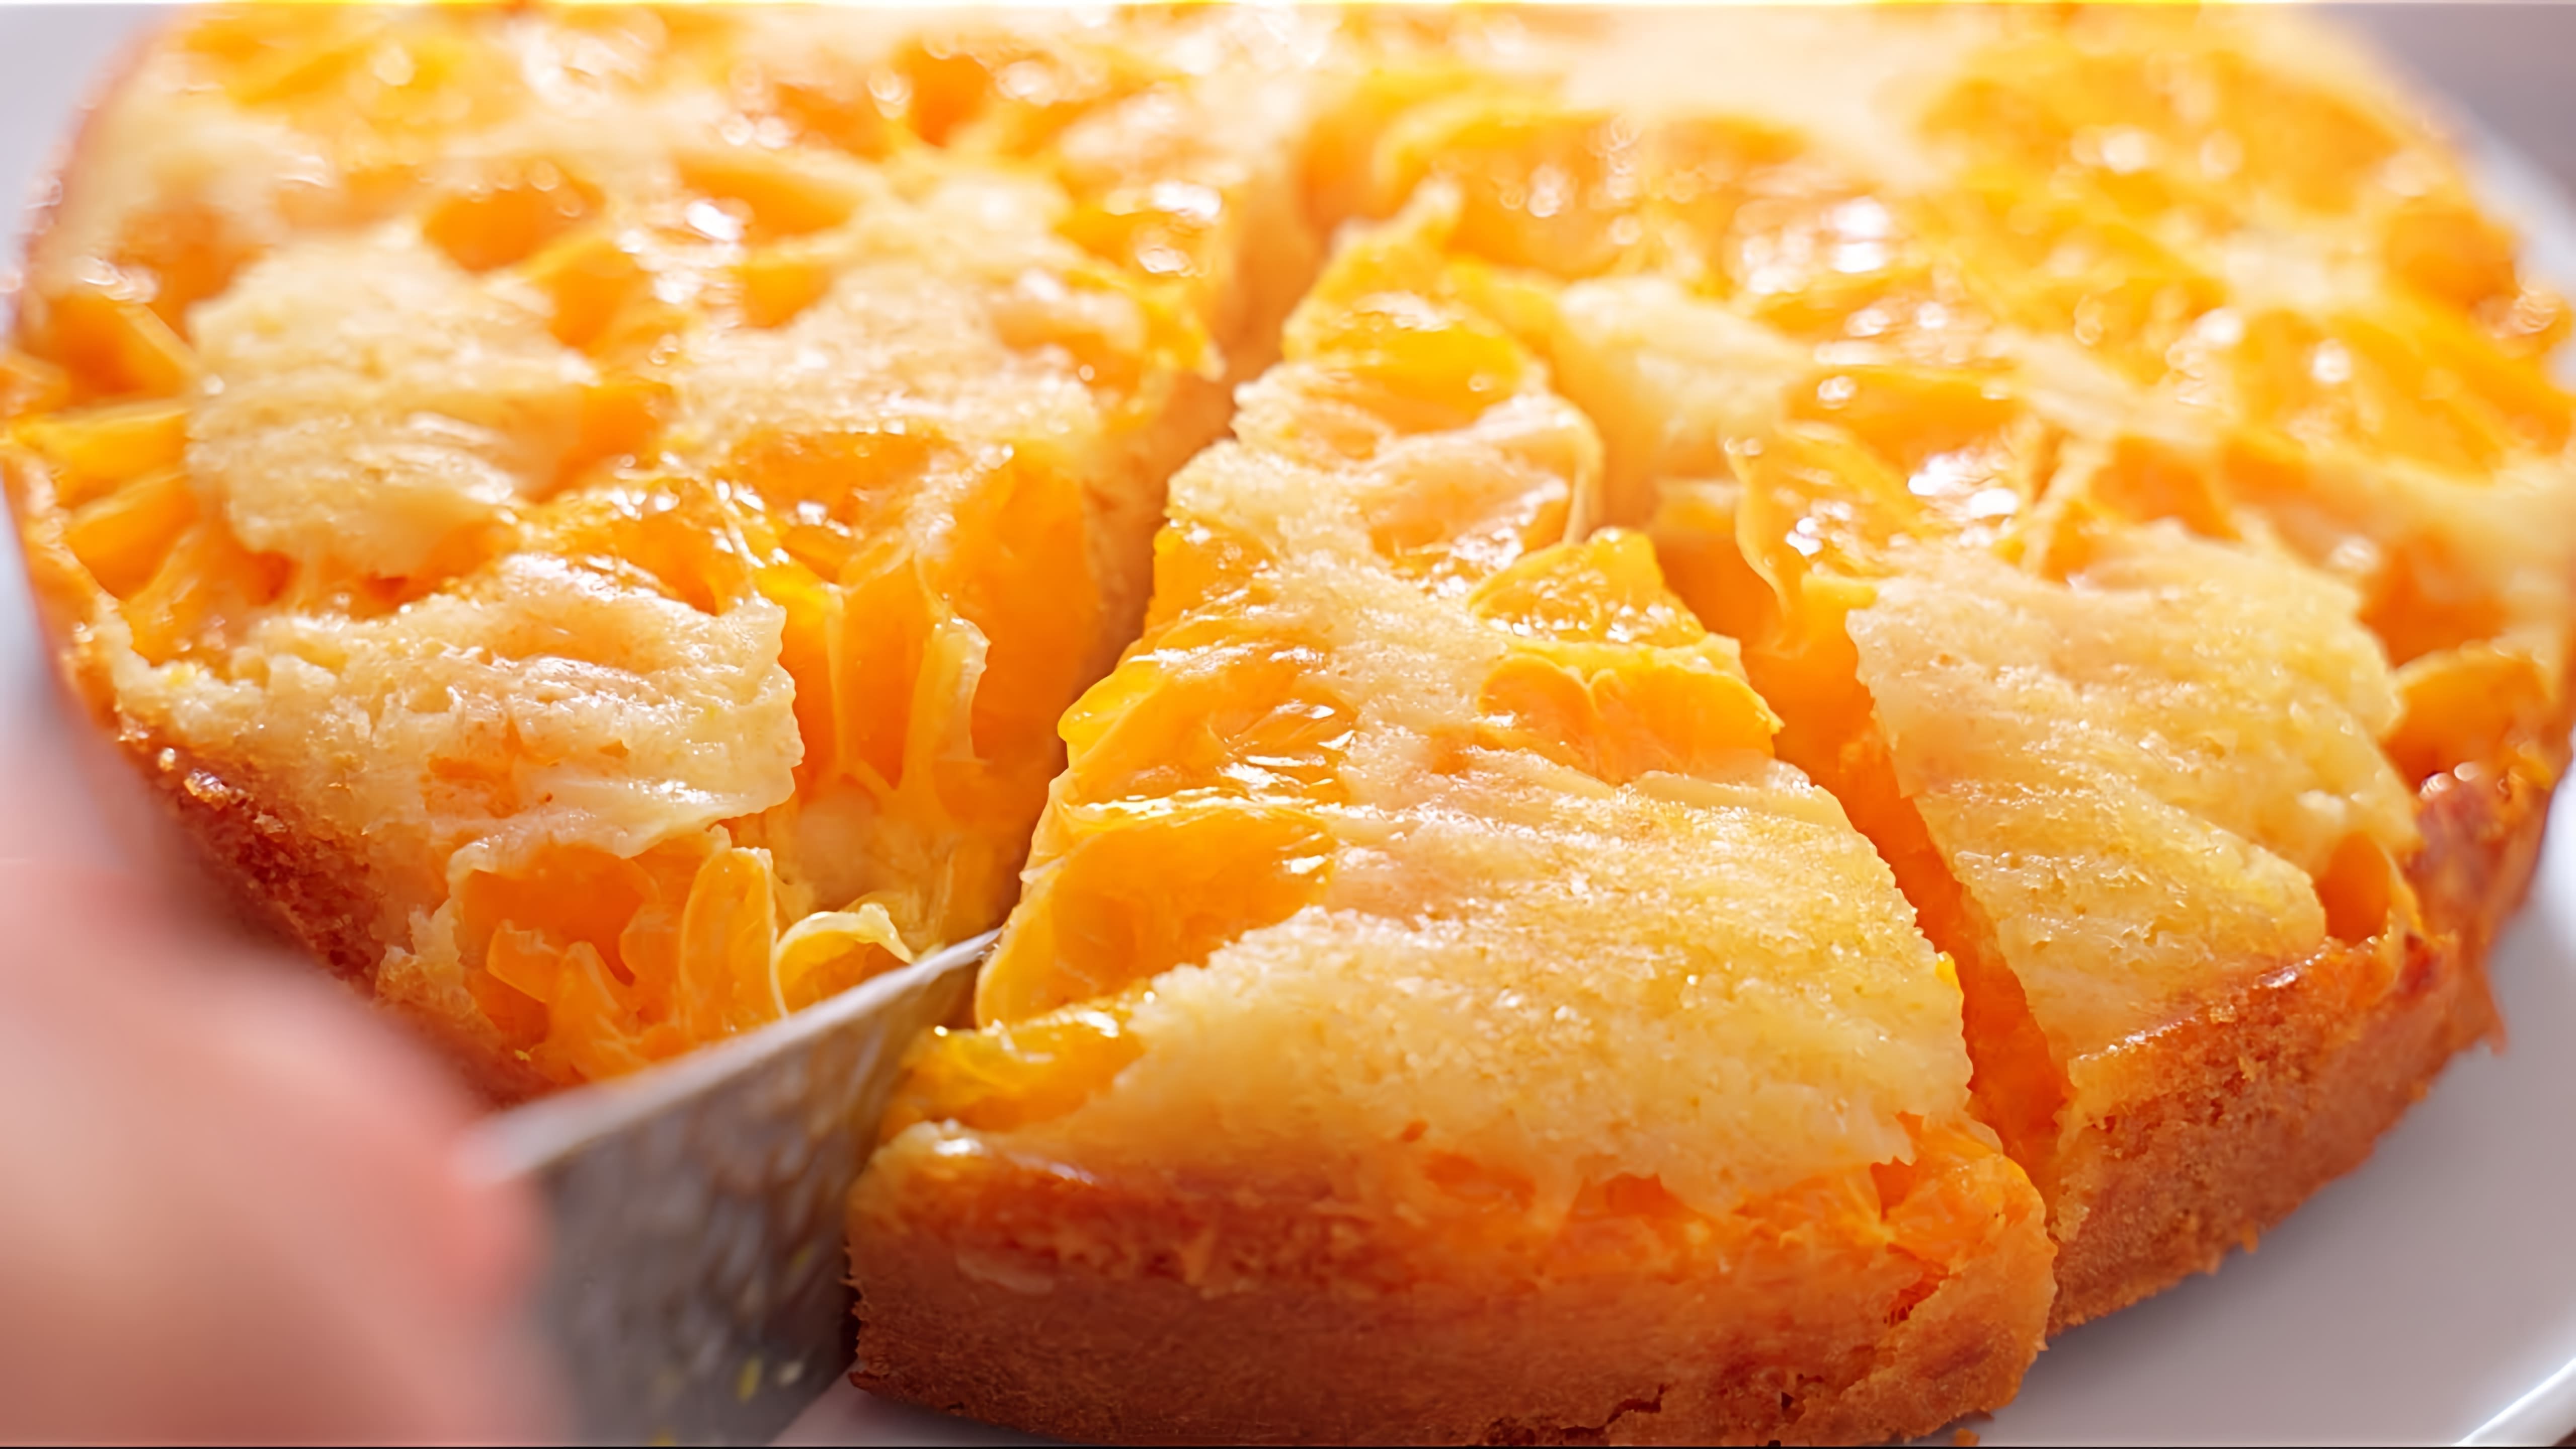 В этом видео демонстрируется процесс приготовления простого и вкусного пирога с мандаринами